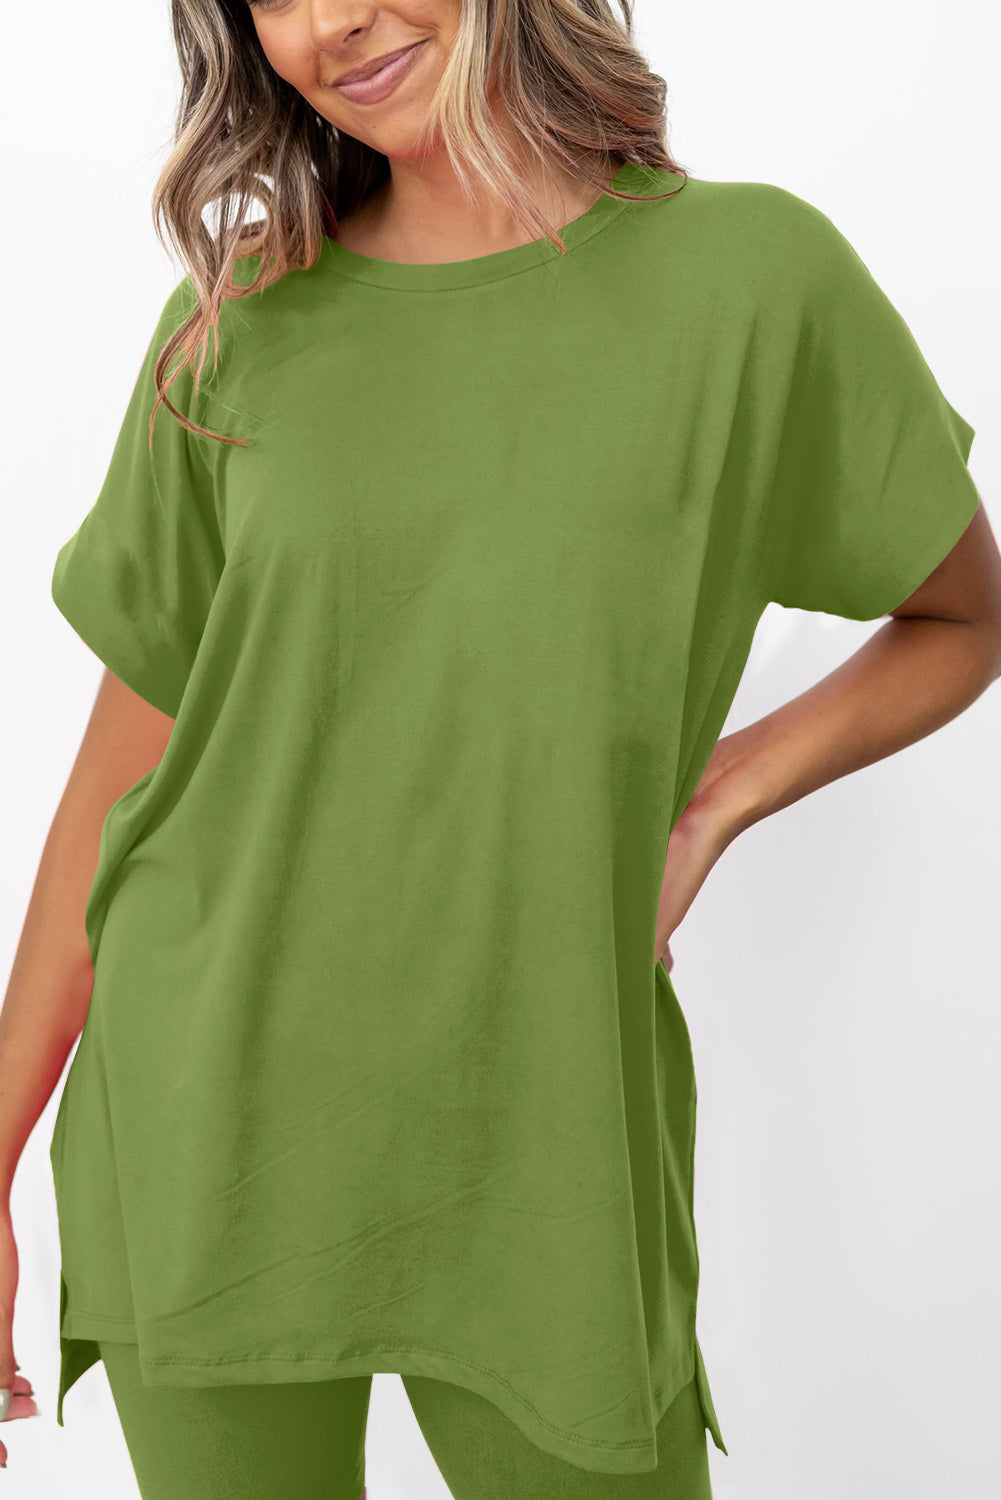 Spinatgrünes Set aus einfarbigem Tunika-T-Shirt mit geteiltem Saum und engen Shorts